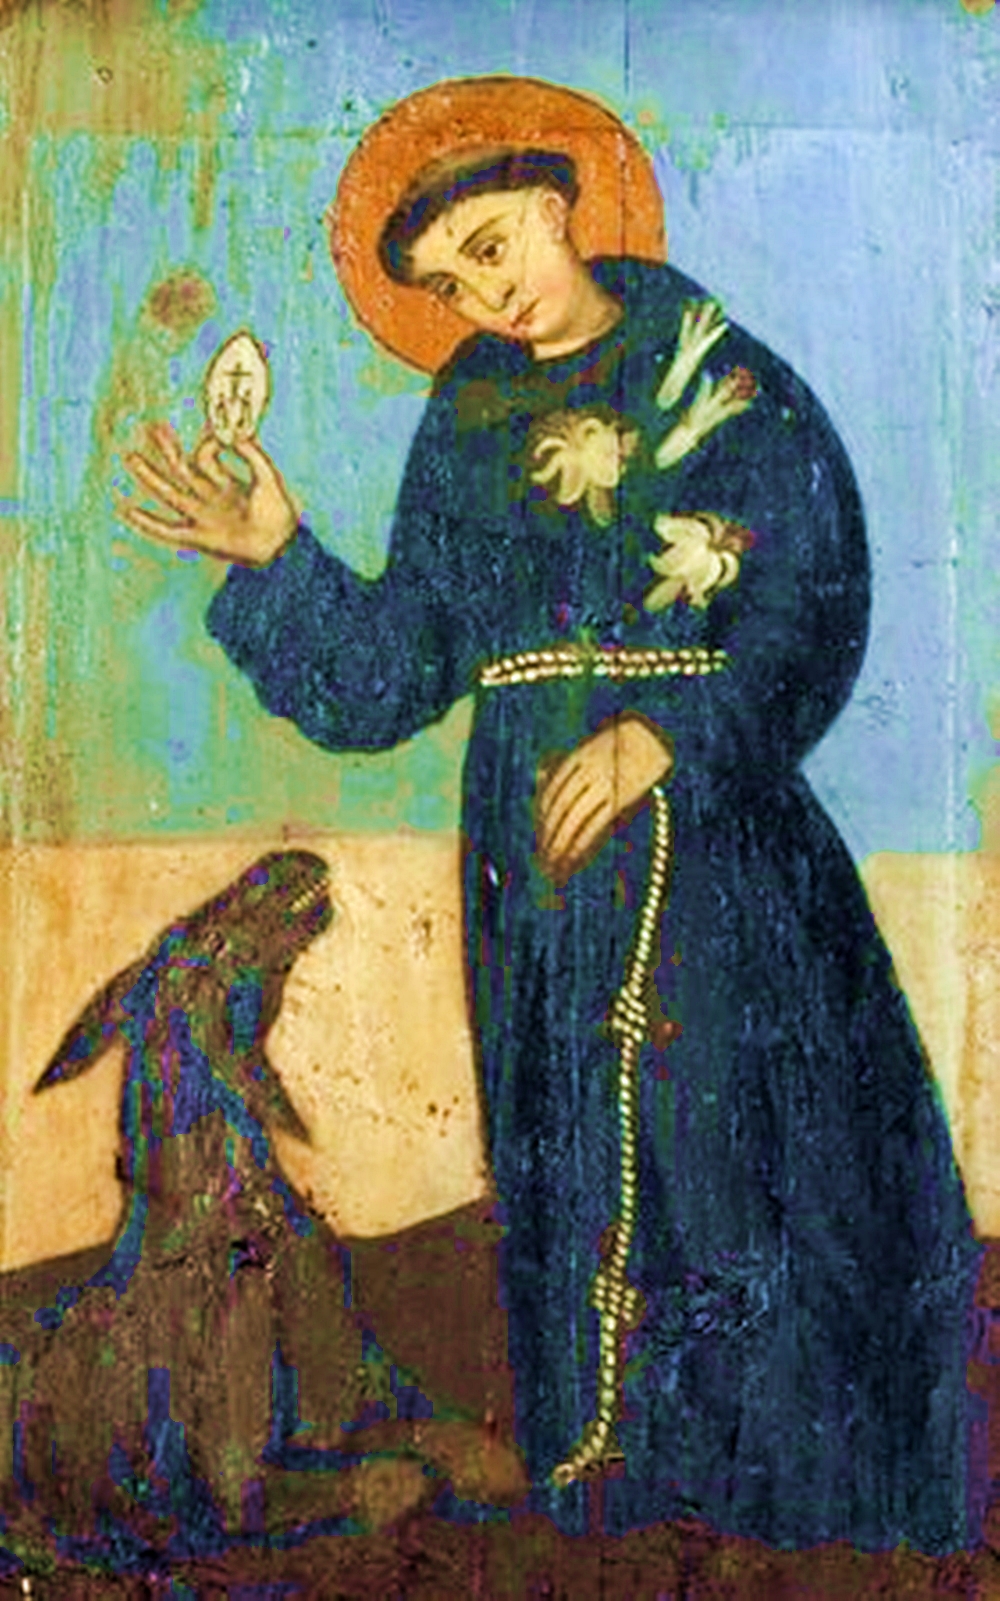 Der Heilige Franziskus zähmt den Wolf von Gubbio (Photo: 123RF - 7176706)